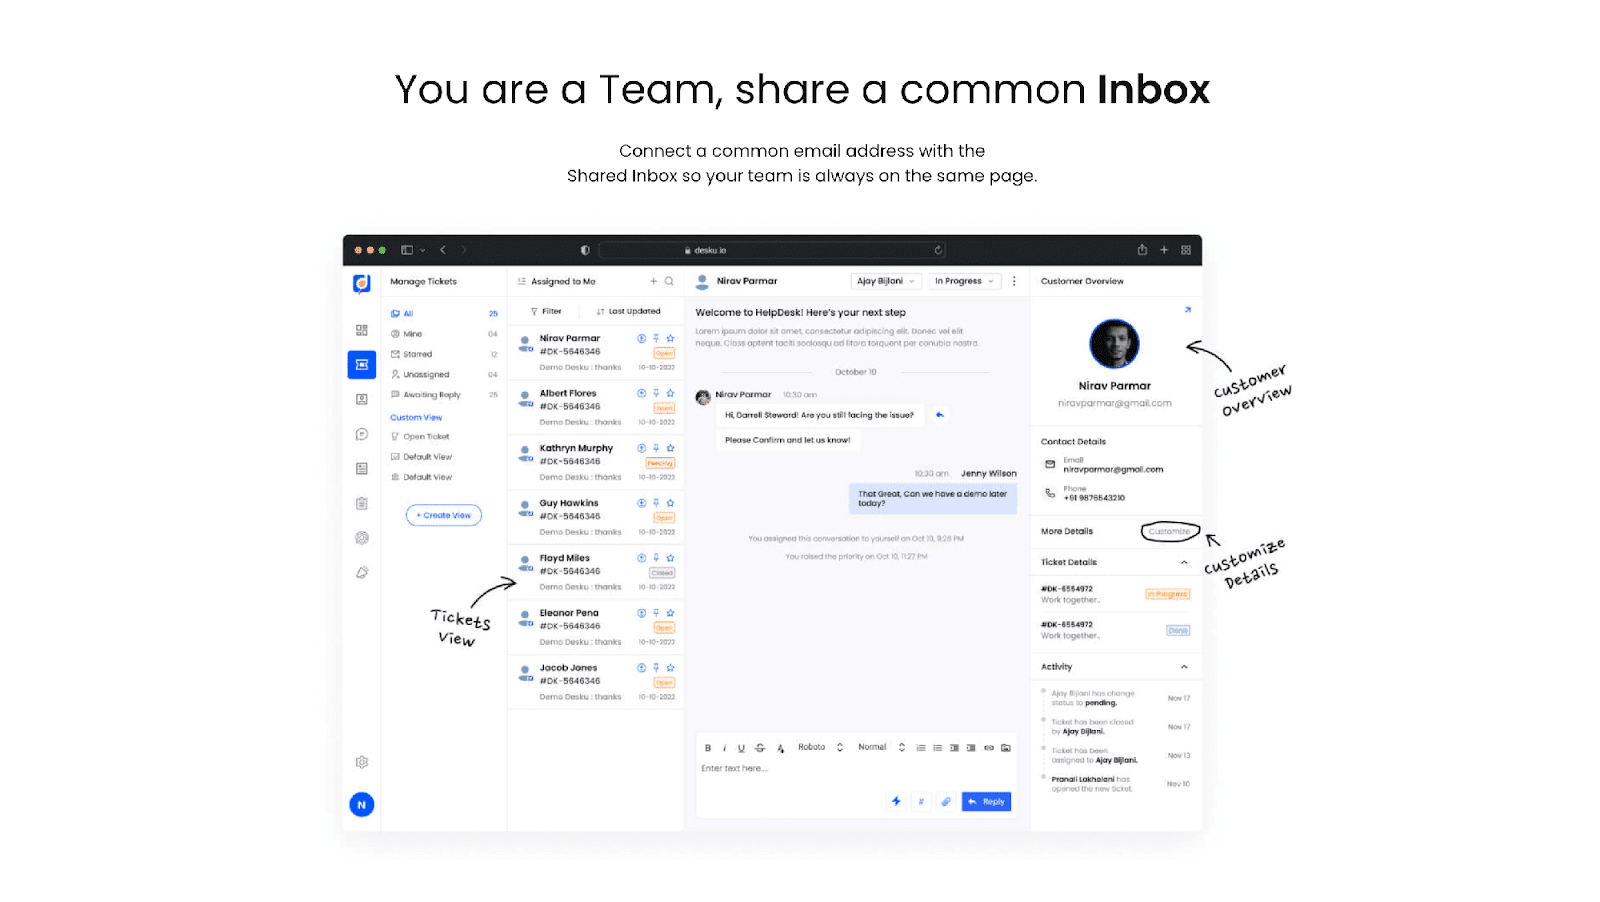 Desku - shared inbox software